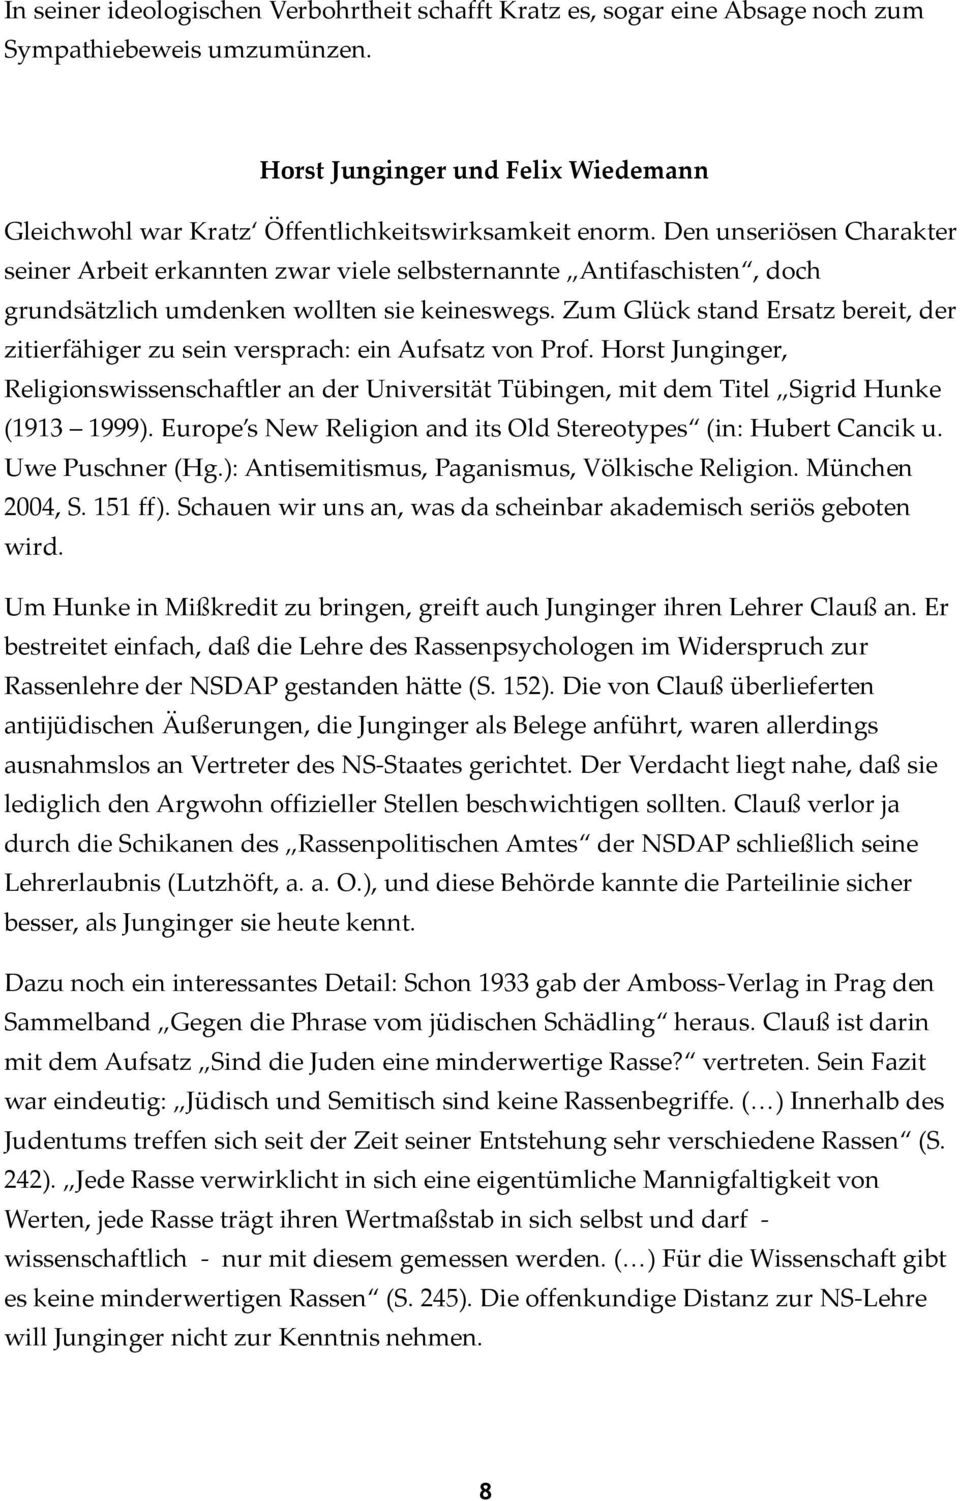 Zum Glück stand Ersatz bereit, der zitierfähiger zu sein versprach: ein Aufsatz von Prof. Horst Junginger, Religionswissenschaftler an der Universität Tübingen, mit dem Titel Sigrid Hunke (1913 1999).